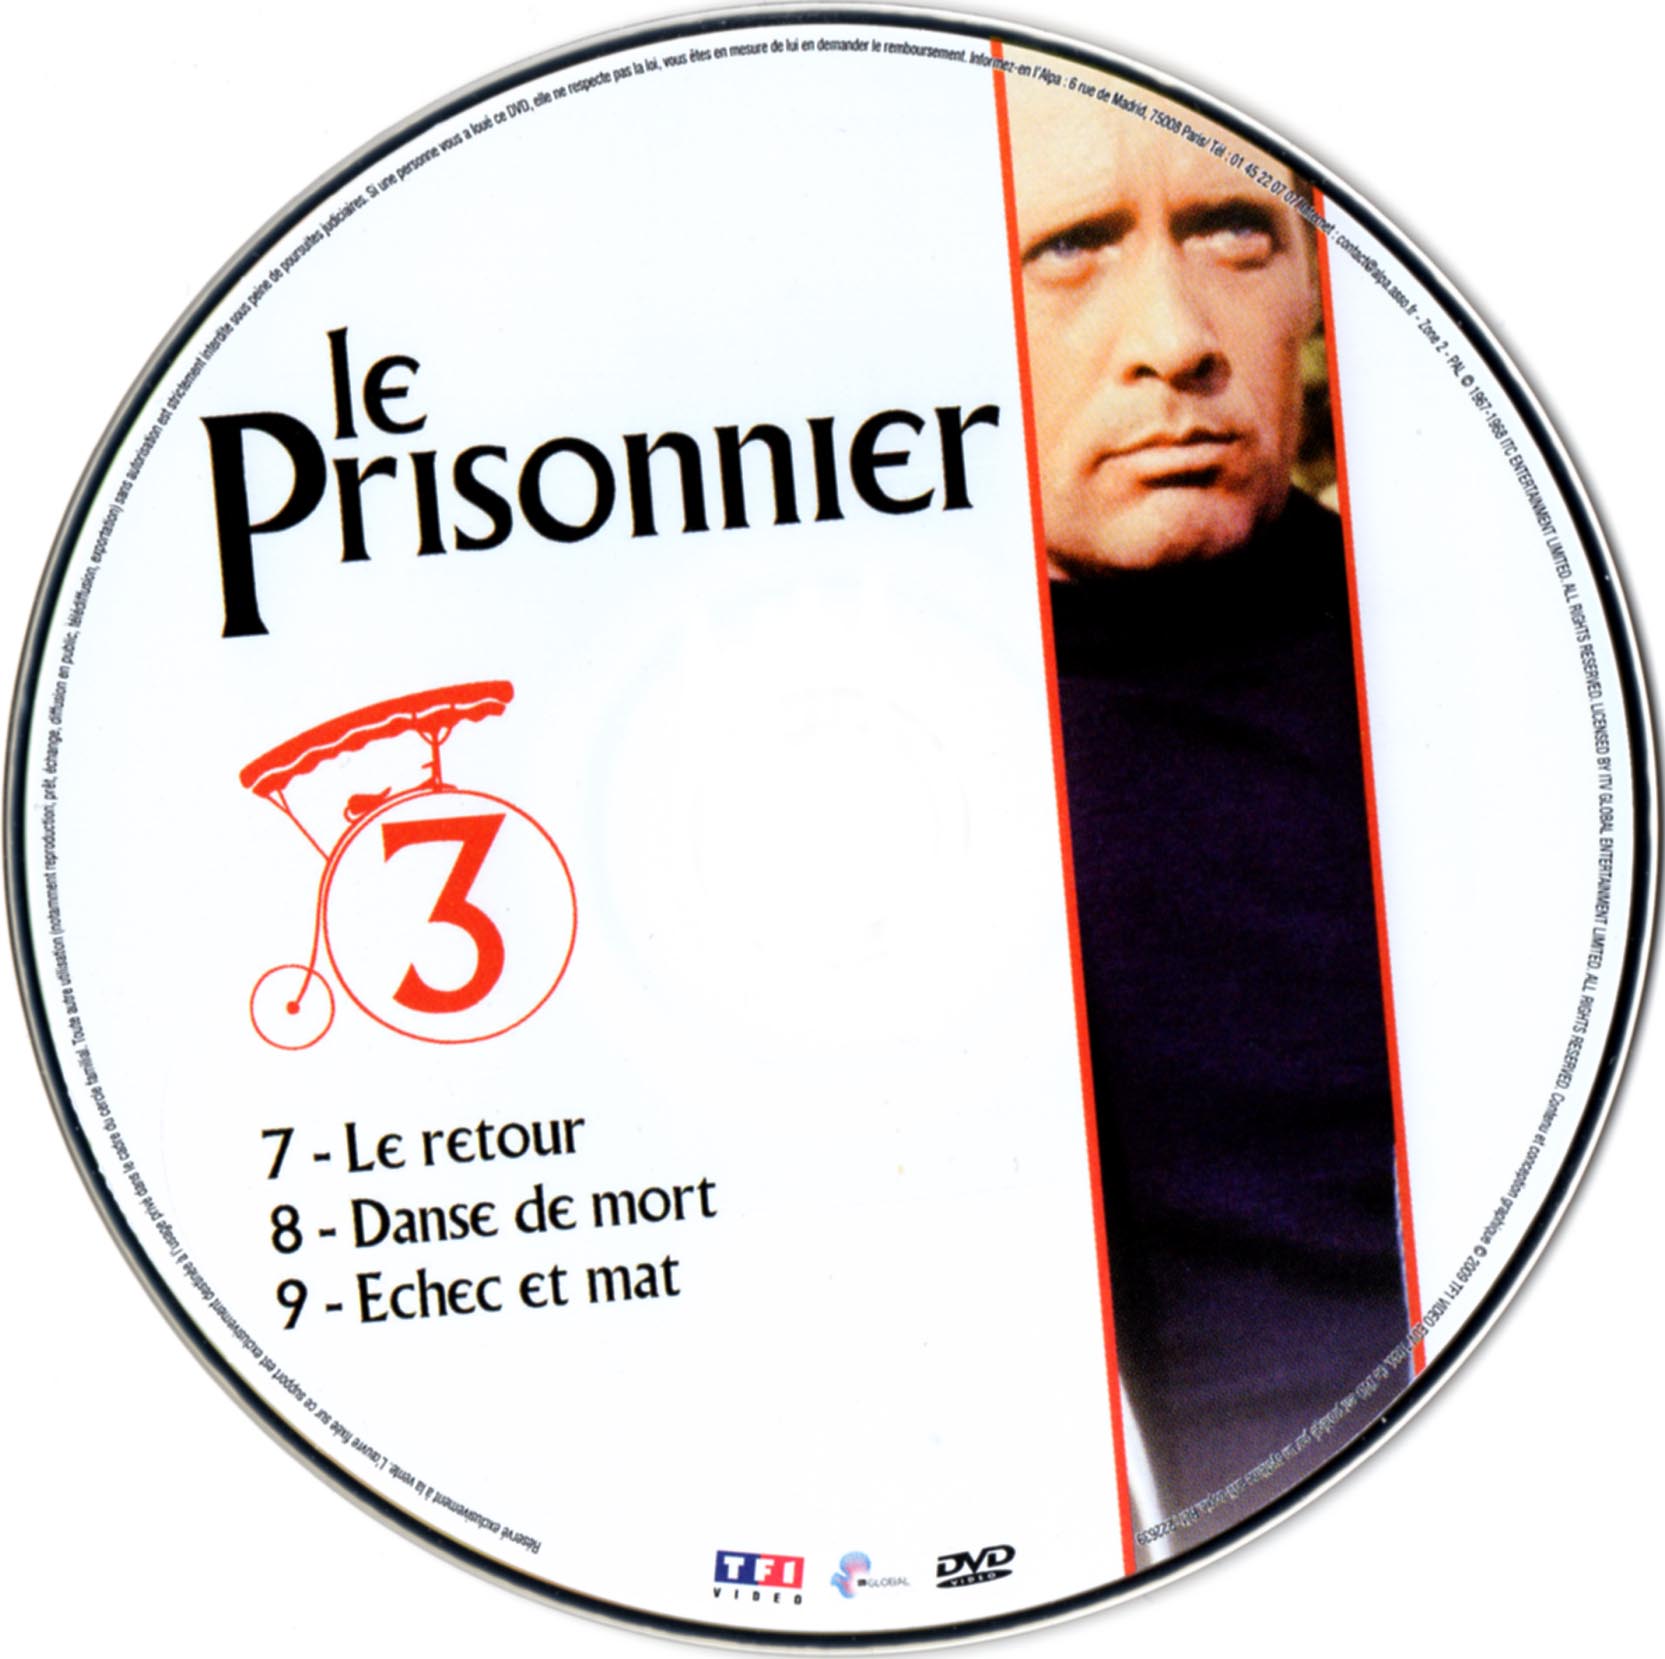 Le prisonnier DISC 3